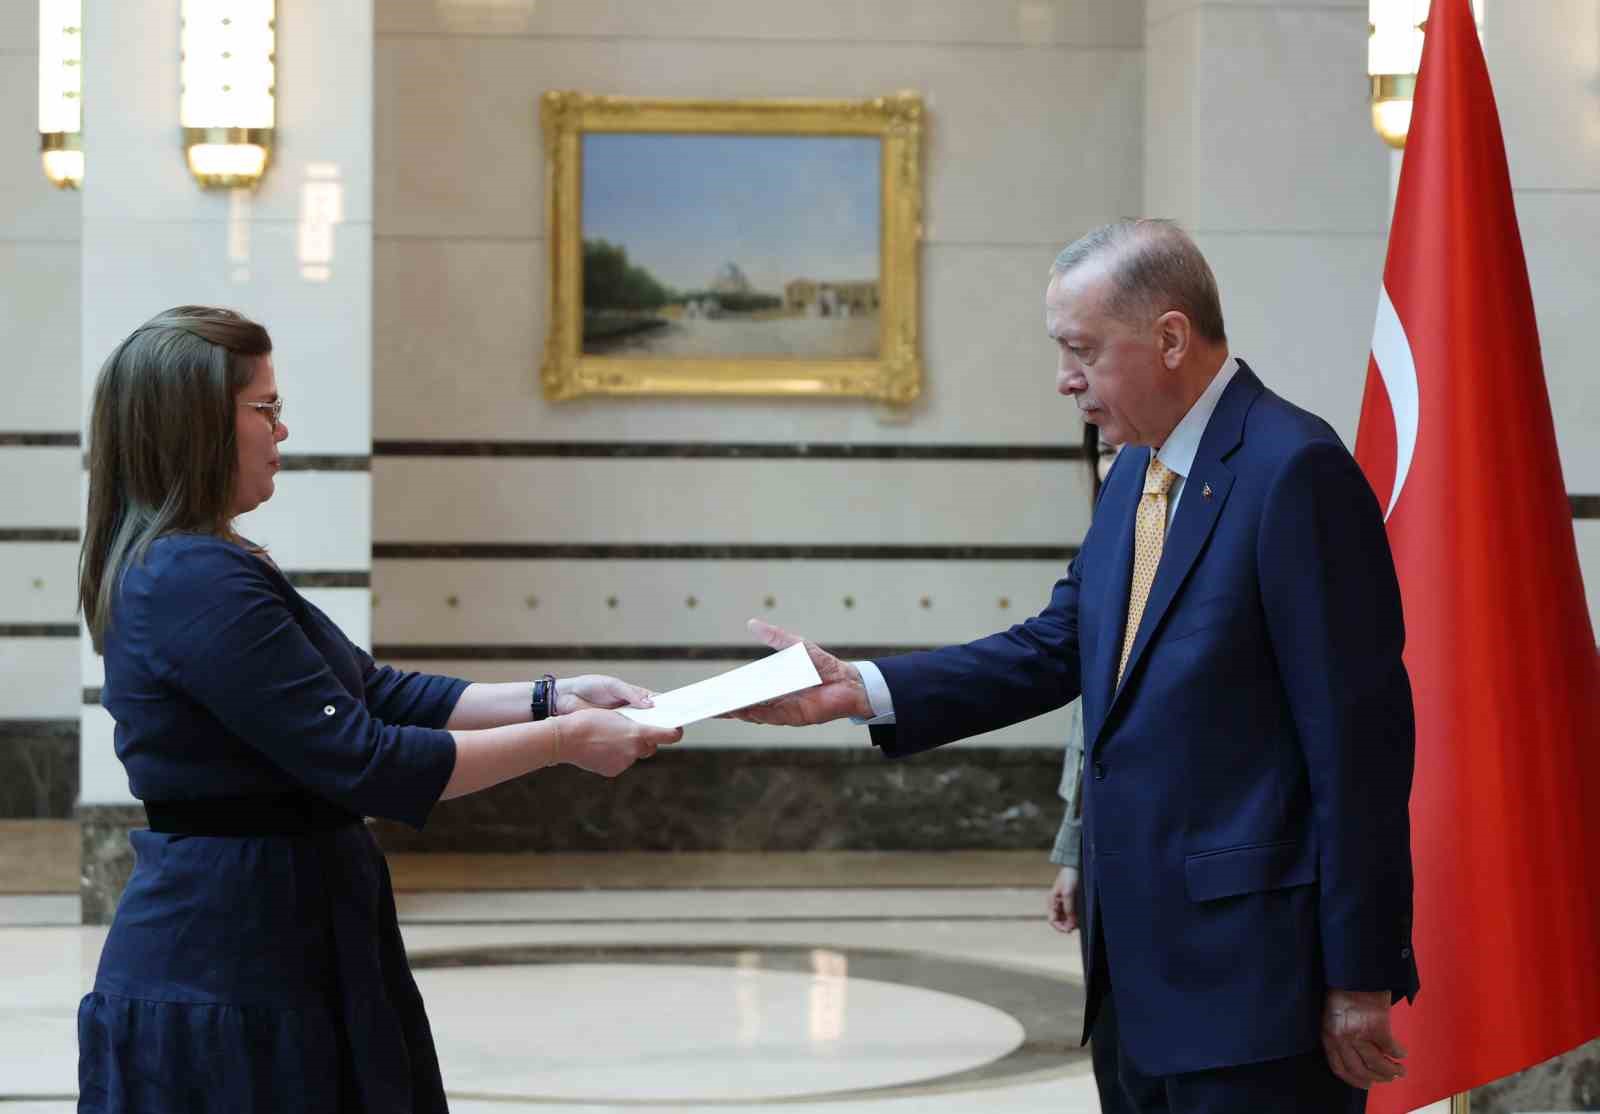 Cumhurbaşkanı Erdoğan’a Ruanda ve Nikaragua büyükelçilerinden güven mektubu
